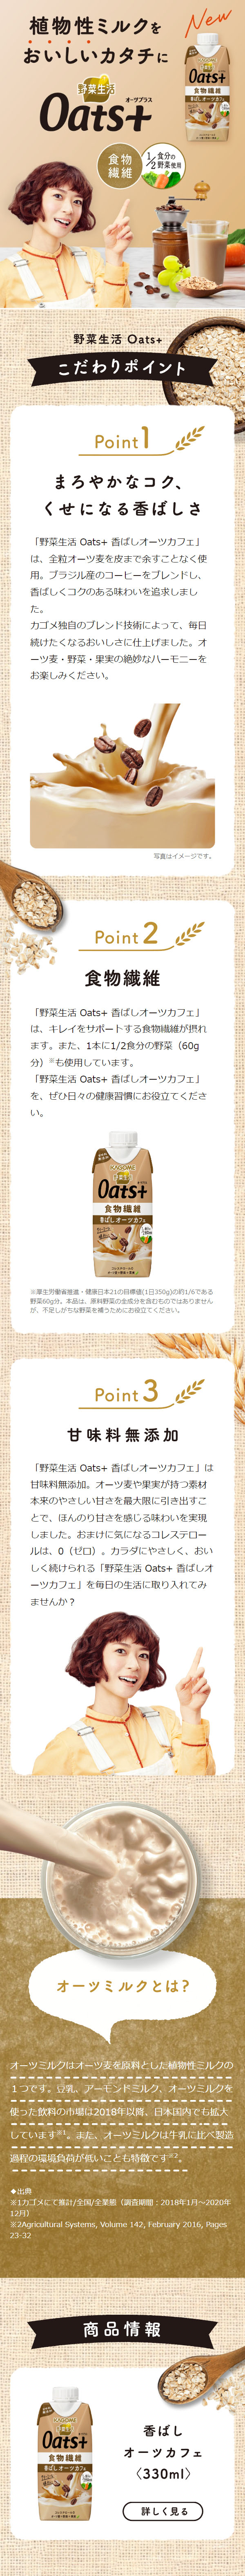 野菜生活 Oats+_sp_1